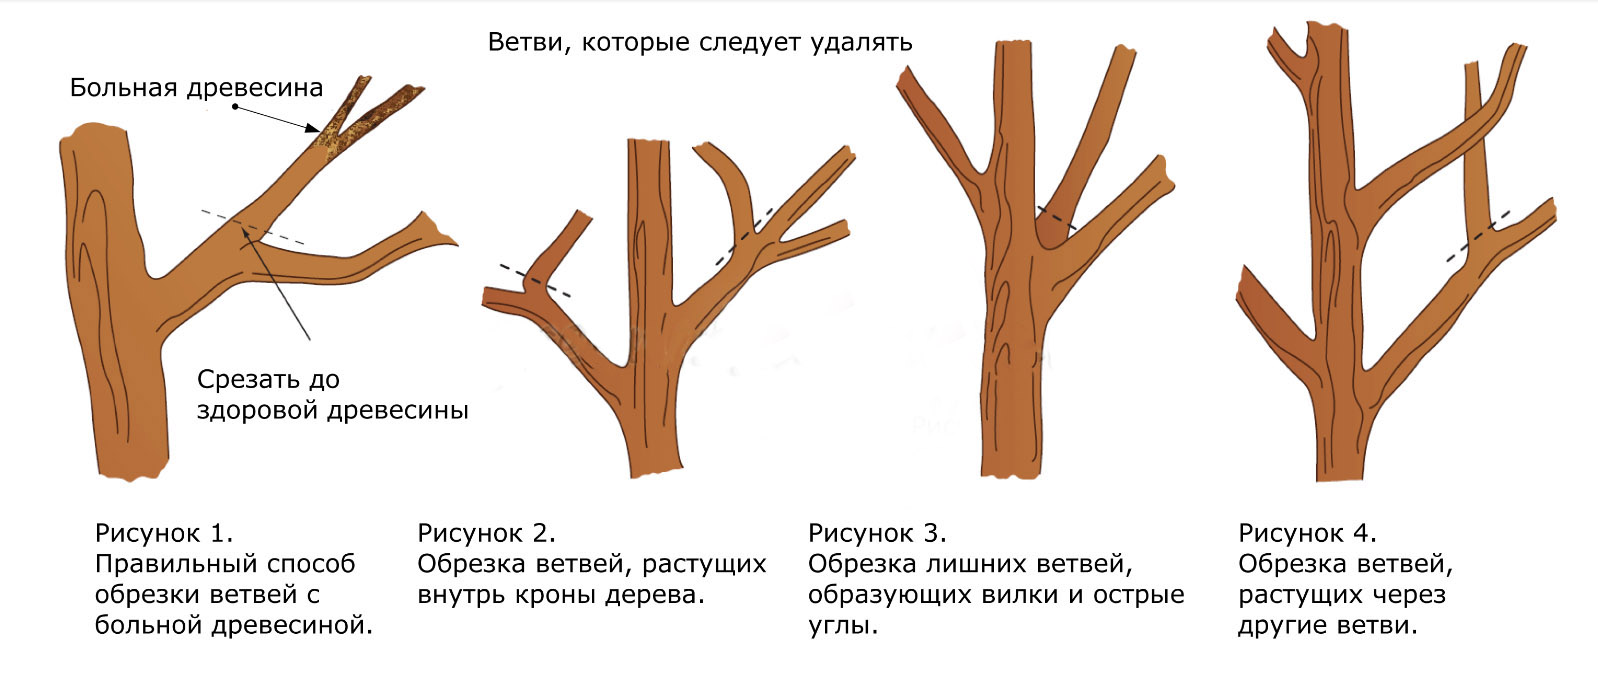 Схема подрезки плодовых деревьев